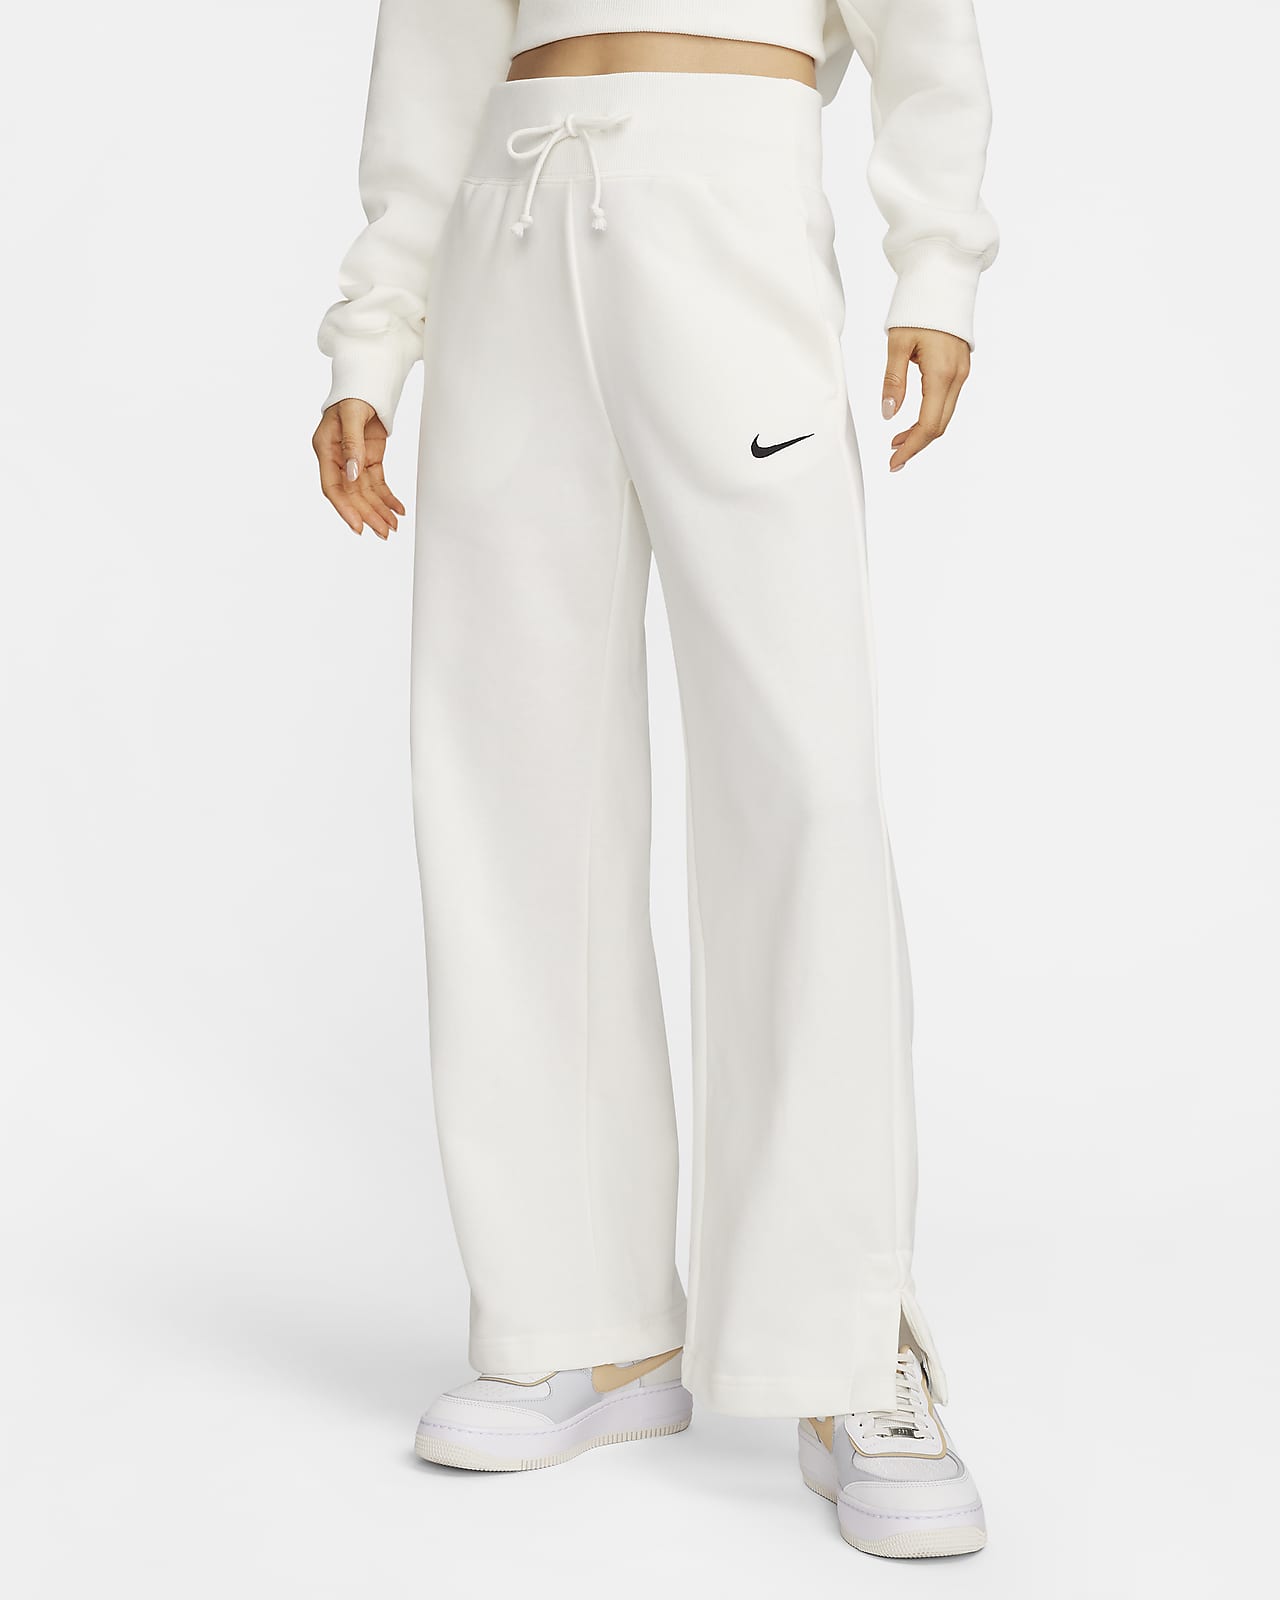 Nike Sportswear Phoenix Fleece 女款高腰寬管毛圈布運動褲